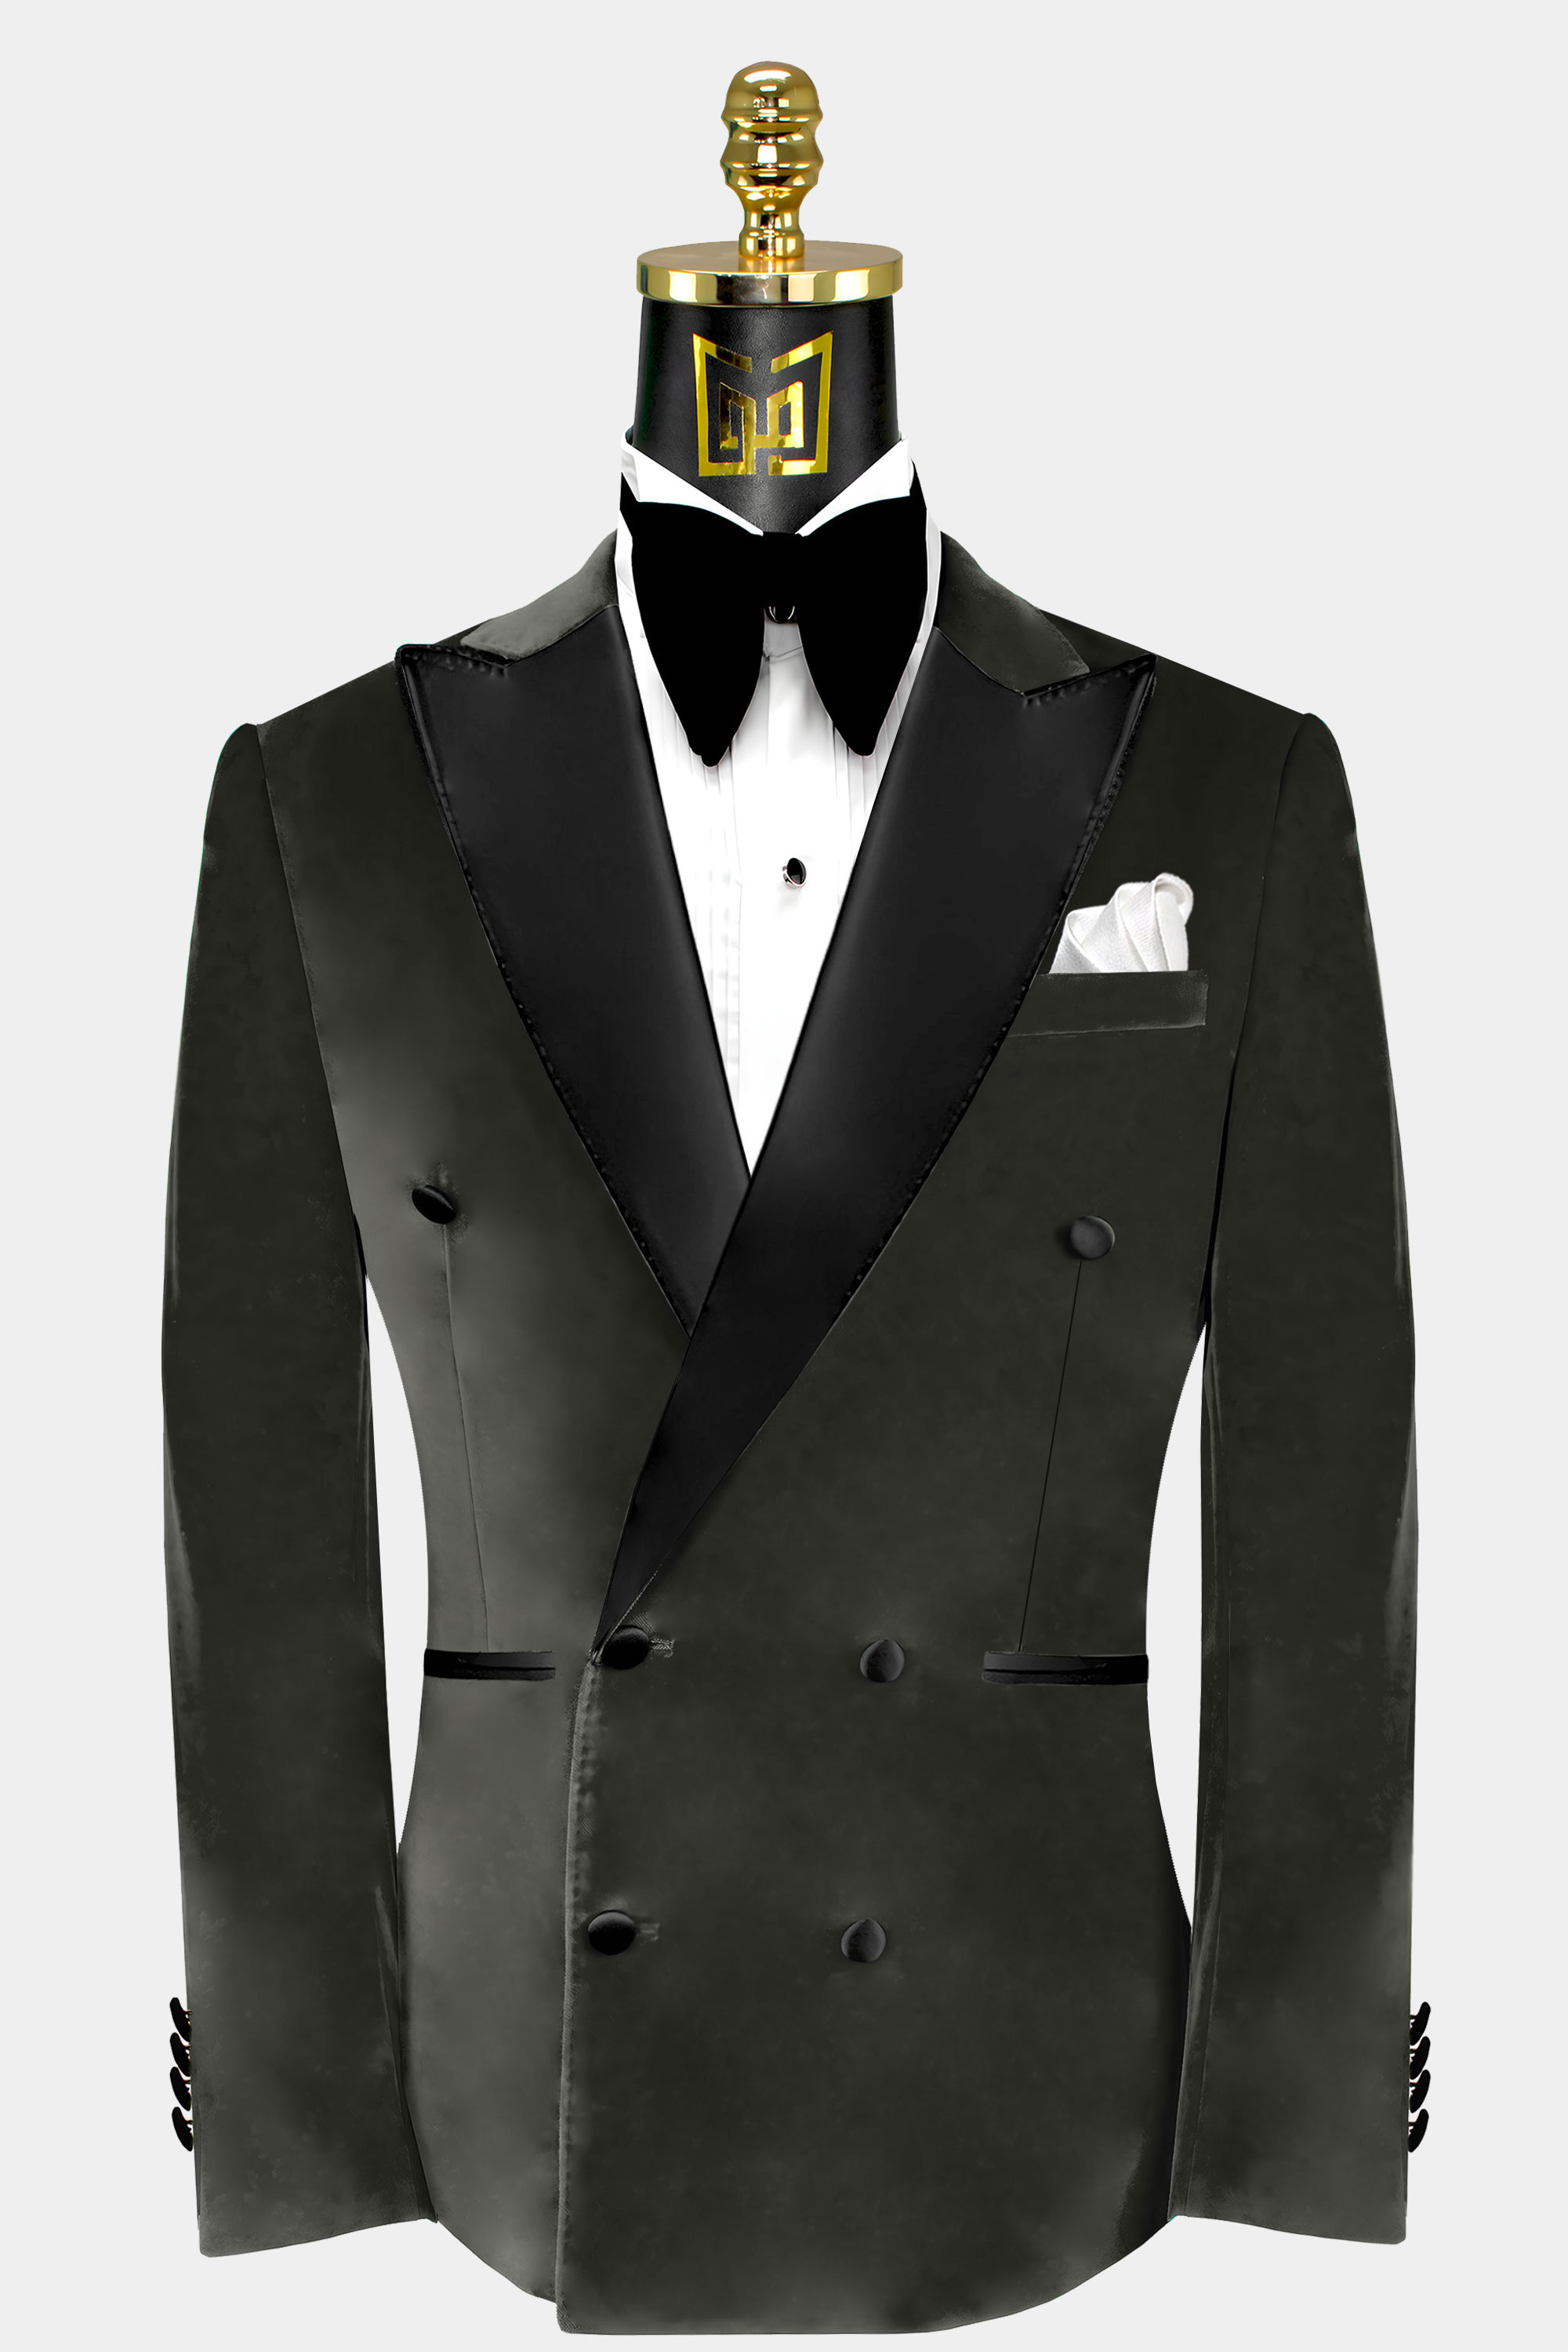 Double-Breasted-Dark-Grey-Velvet-Tuxedo-Jacket-Wedding-Groom-Blazer-from-Gentlemansguru.com